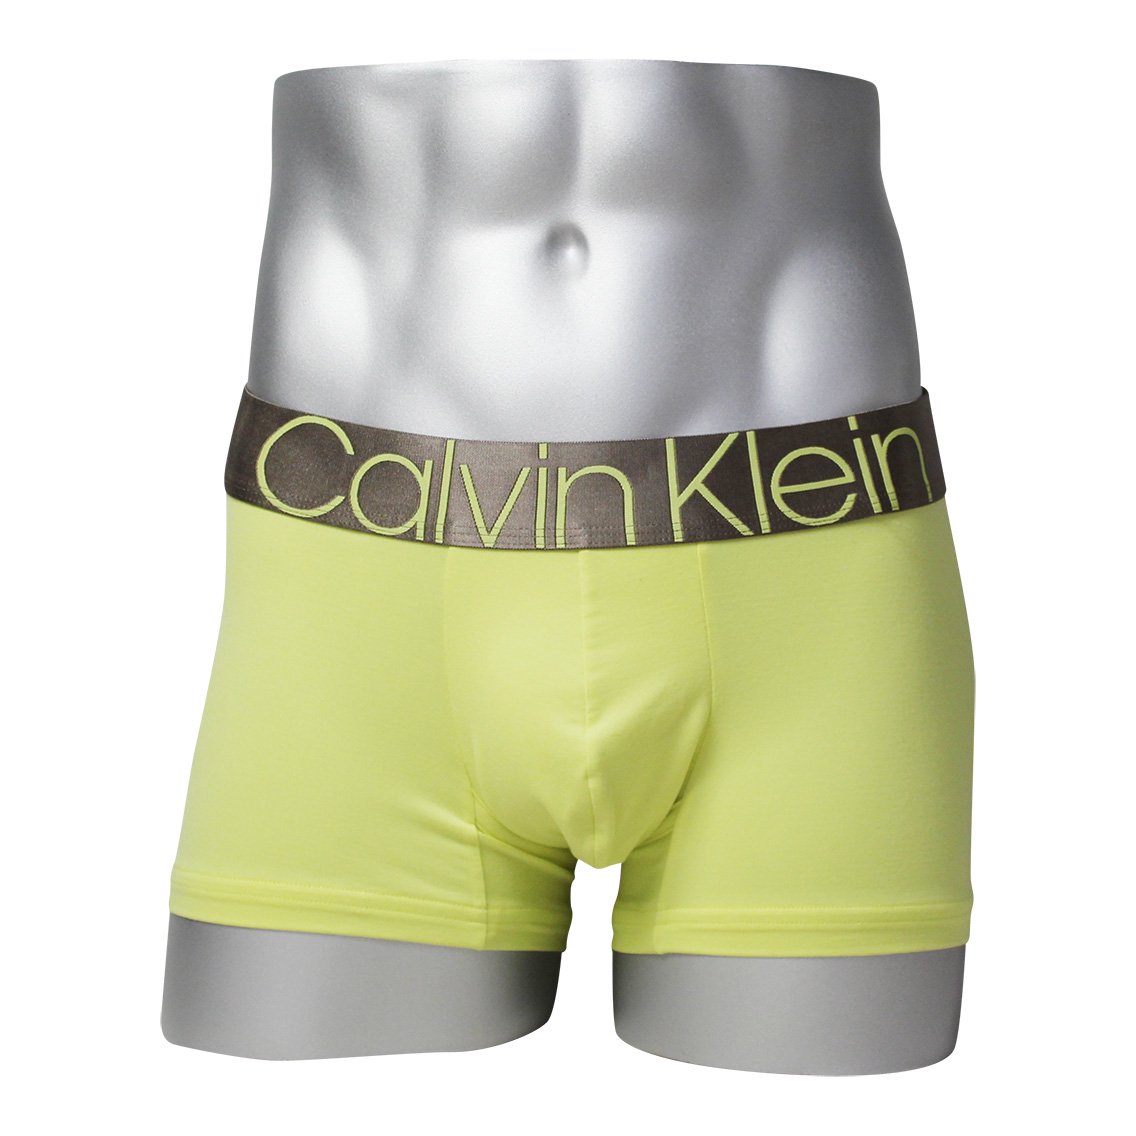 Calvin Klein(カルバンクライン)[NB2540-341]:ボクサーパンツ,男性下着,インナーの通販